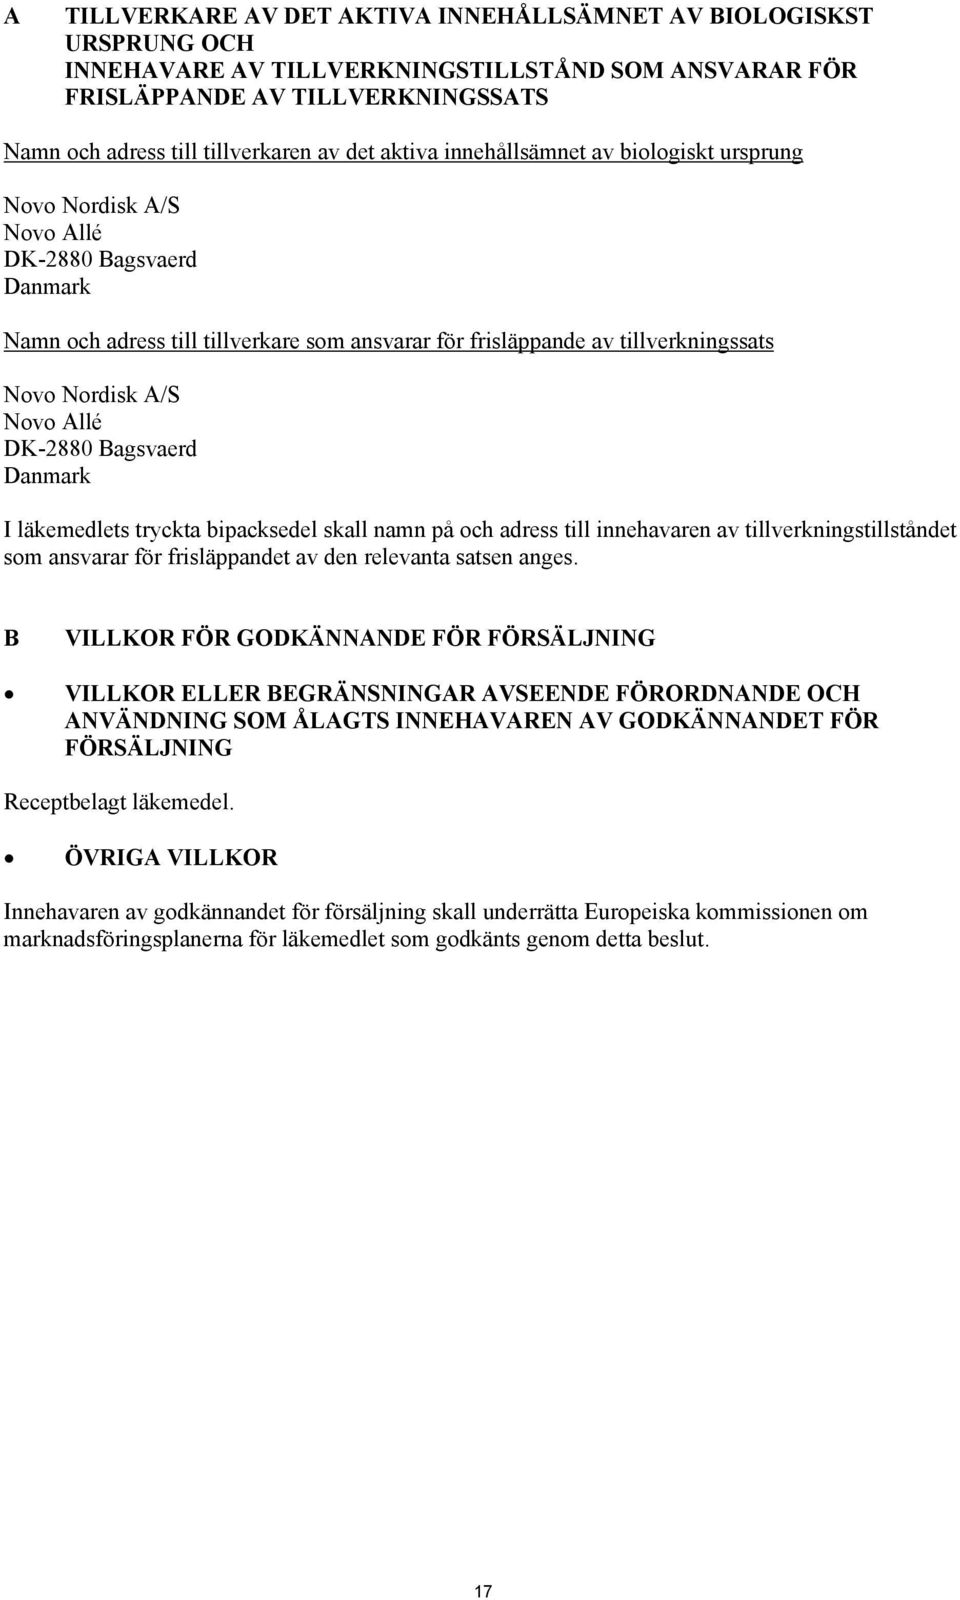 Novo Allé DK-2880 Bagsvaerd Danmark I läkemedlets tryckta bipacksedel skall namn på och adress till innehavaren av tillverkningstillståndet som ansvarar för frisläppandet av den relevanta satsen